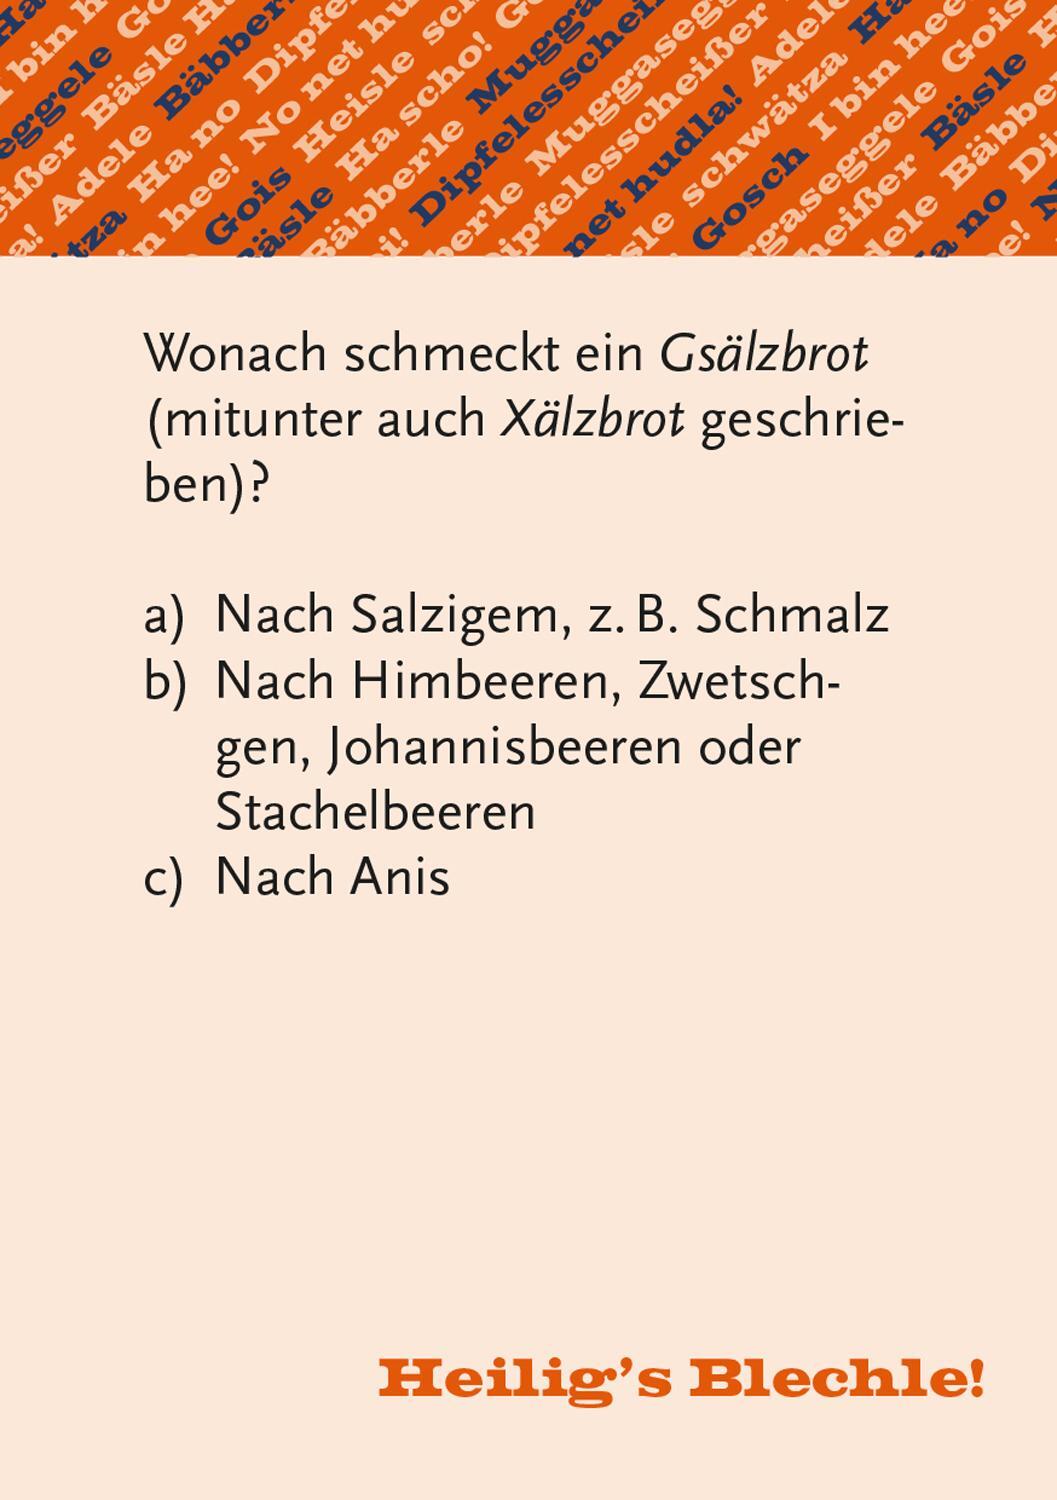 Bild: 4250364115216 | Heiligs Blechle! Schwäbisches Dialekt-Quiz | Thomas Schulz | Stück